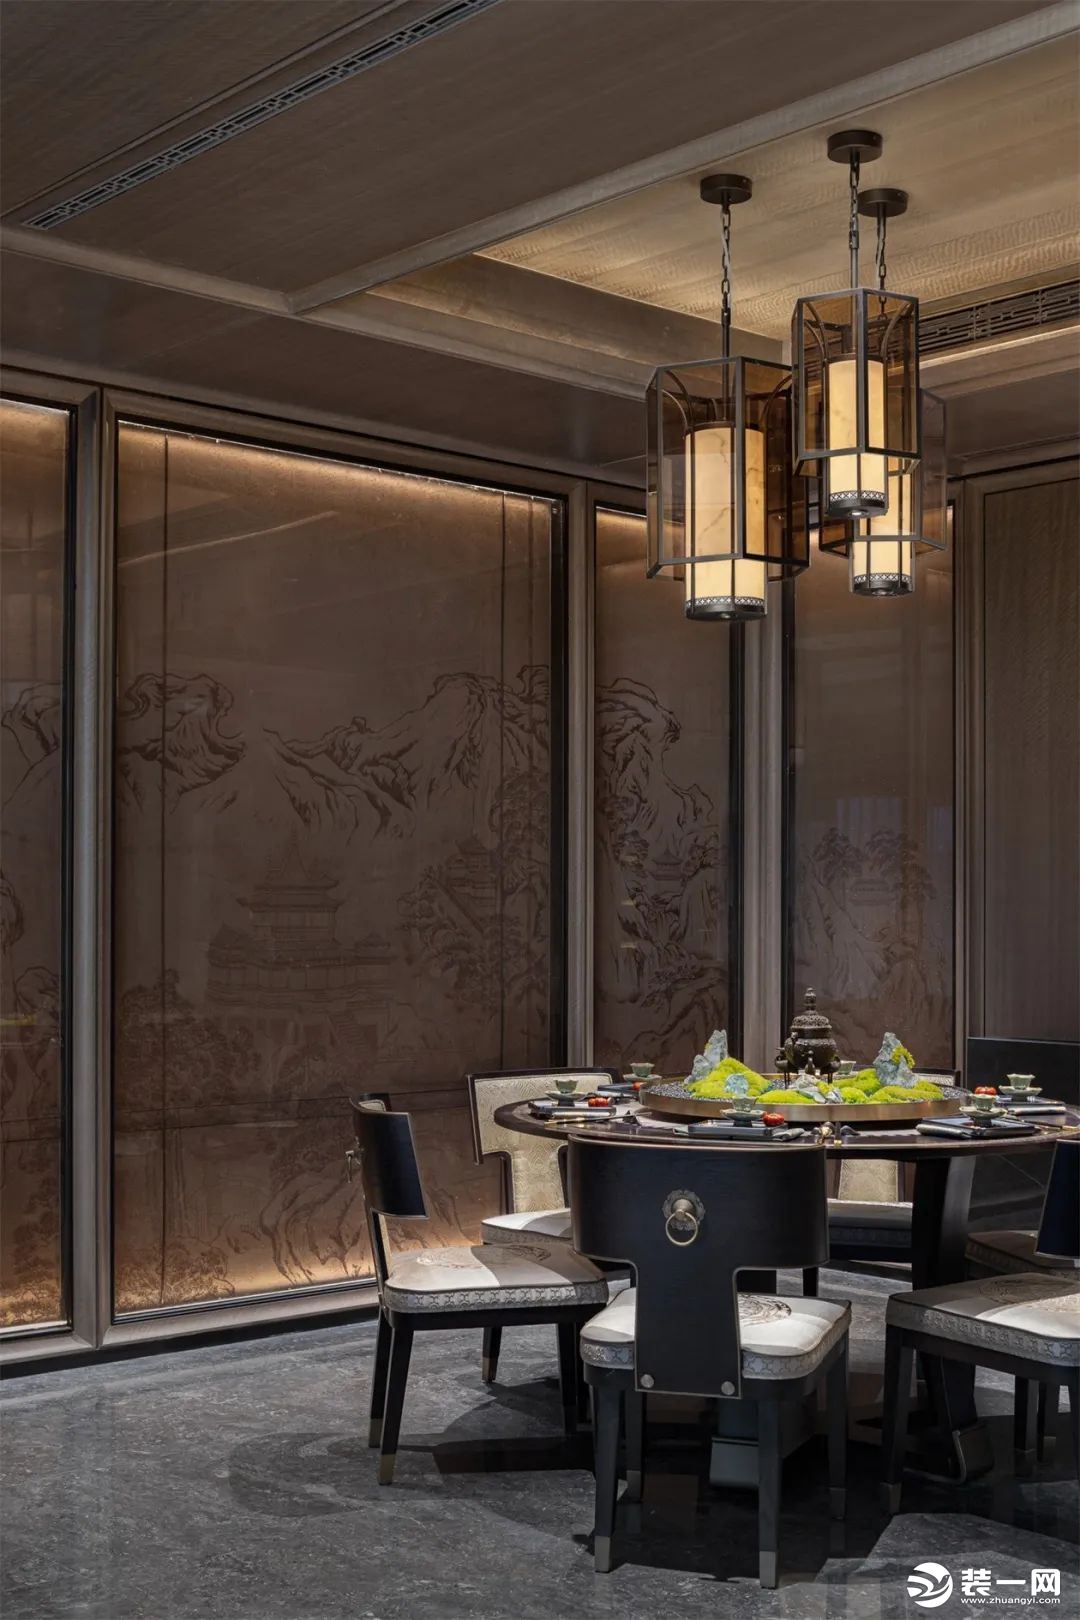 餐厅墙顶连通形成整体，背景植入江阴古建筑轮廓画，表面再增加夹丝玻璃，形成双层叠加的中式朦胧感。